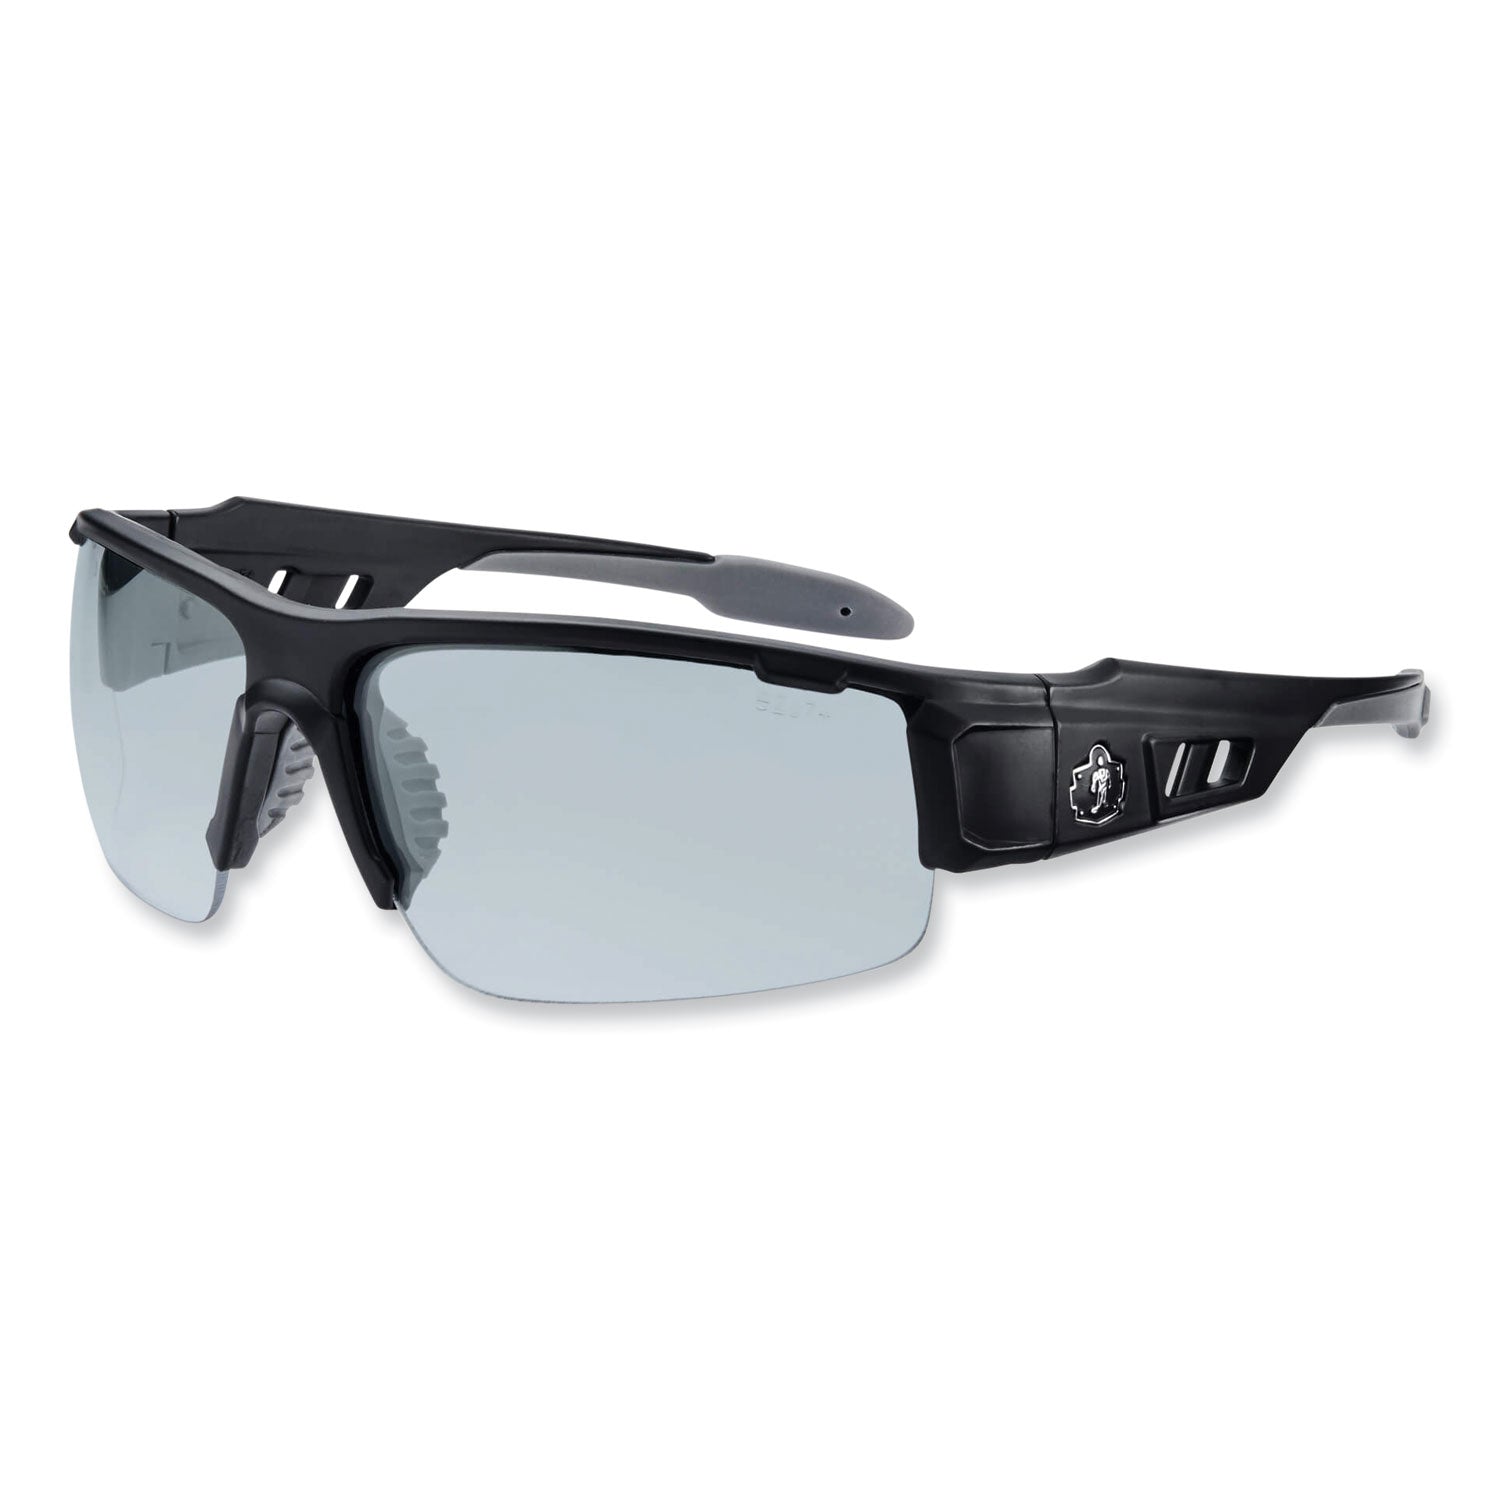 skullerz-dagr-safety-glasses-black-nylon-impact-frame-antifog-indoor-outdoor-polycarbonate-lens-ships-in-1-3-business-days_ego52483 - 1